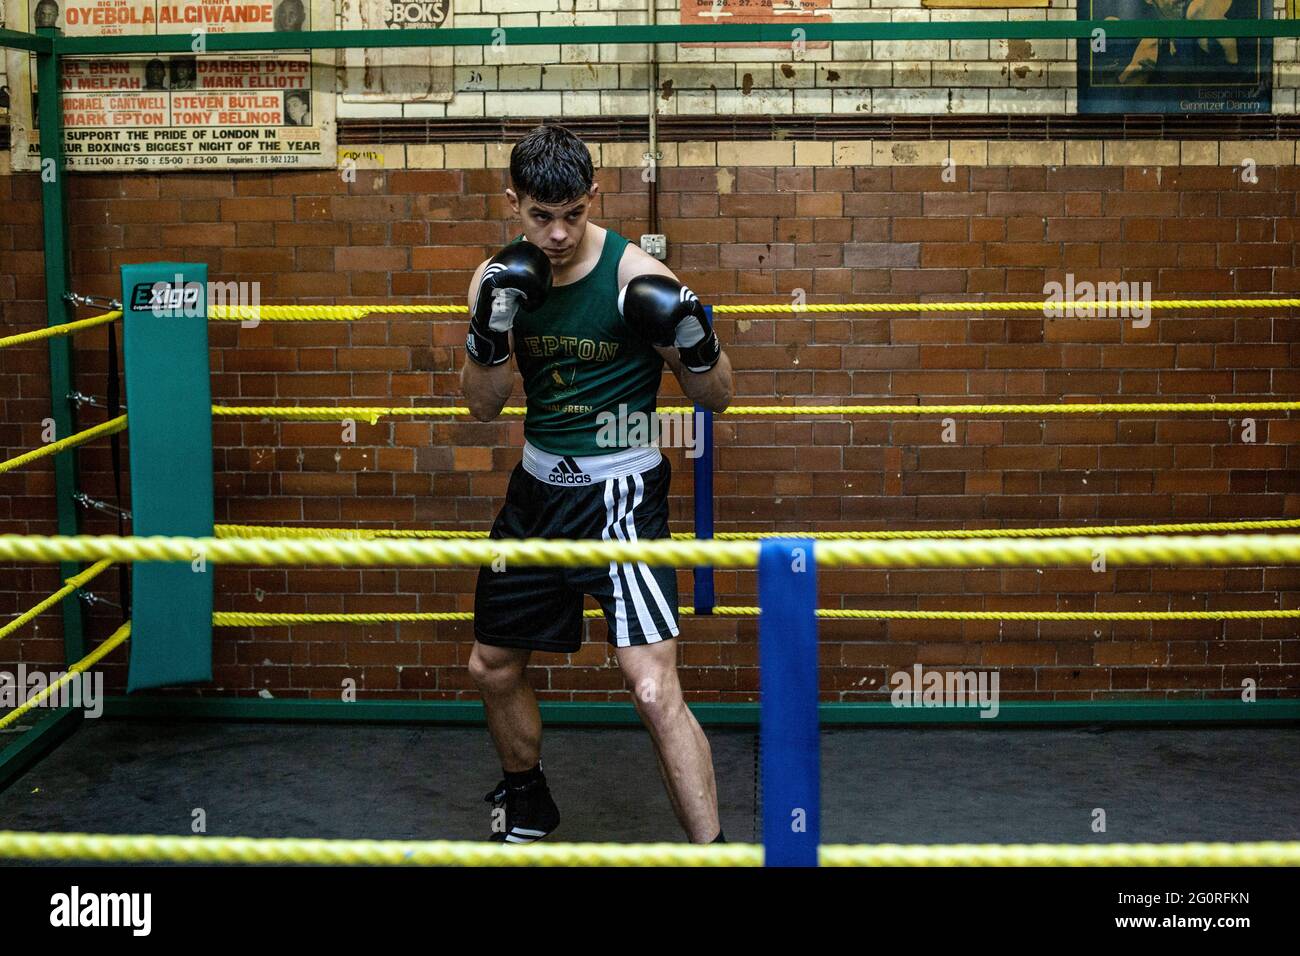 Jeune homme sportif se préparant aux compétitions de boxe, à l'entraînement de défense et aux attaques dans le club de boxe. Banque D'Images